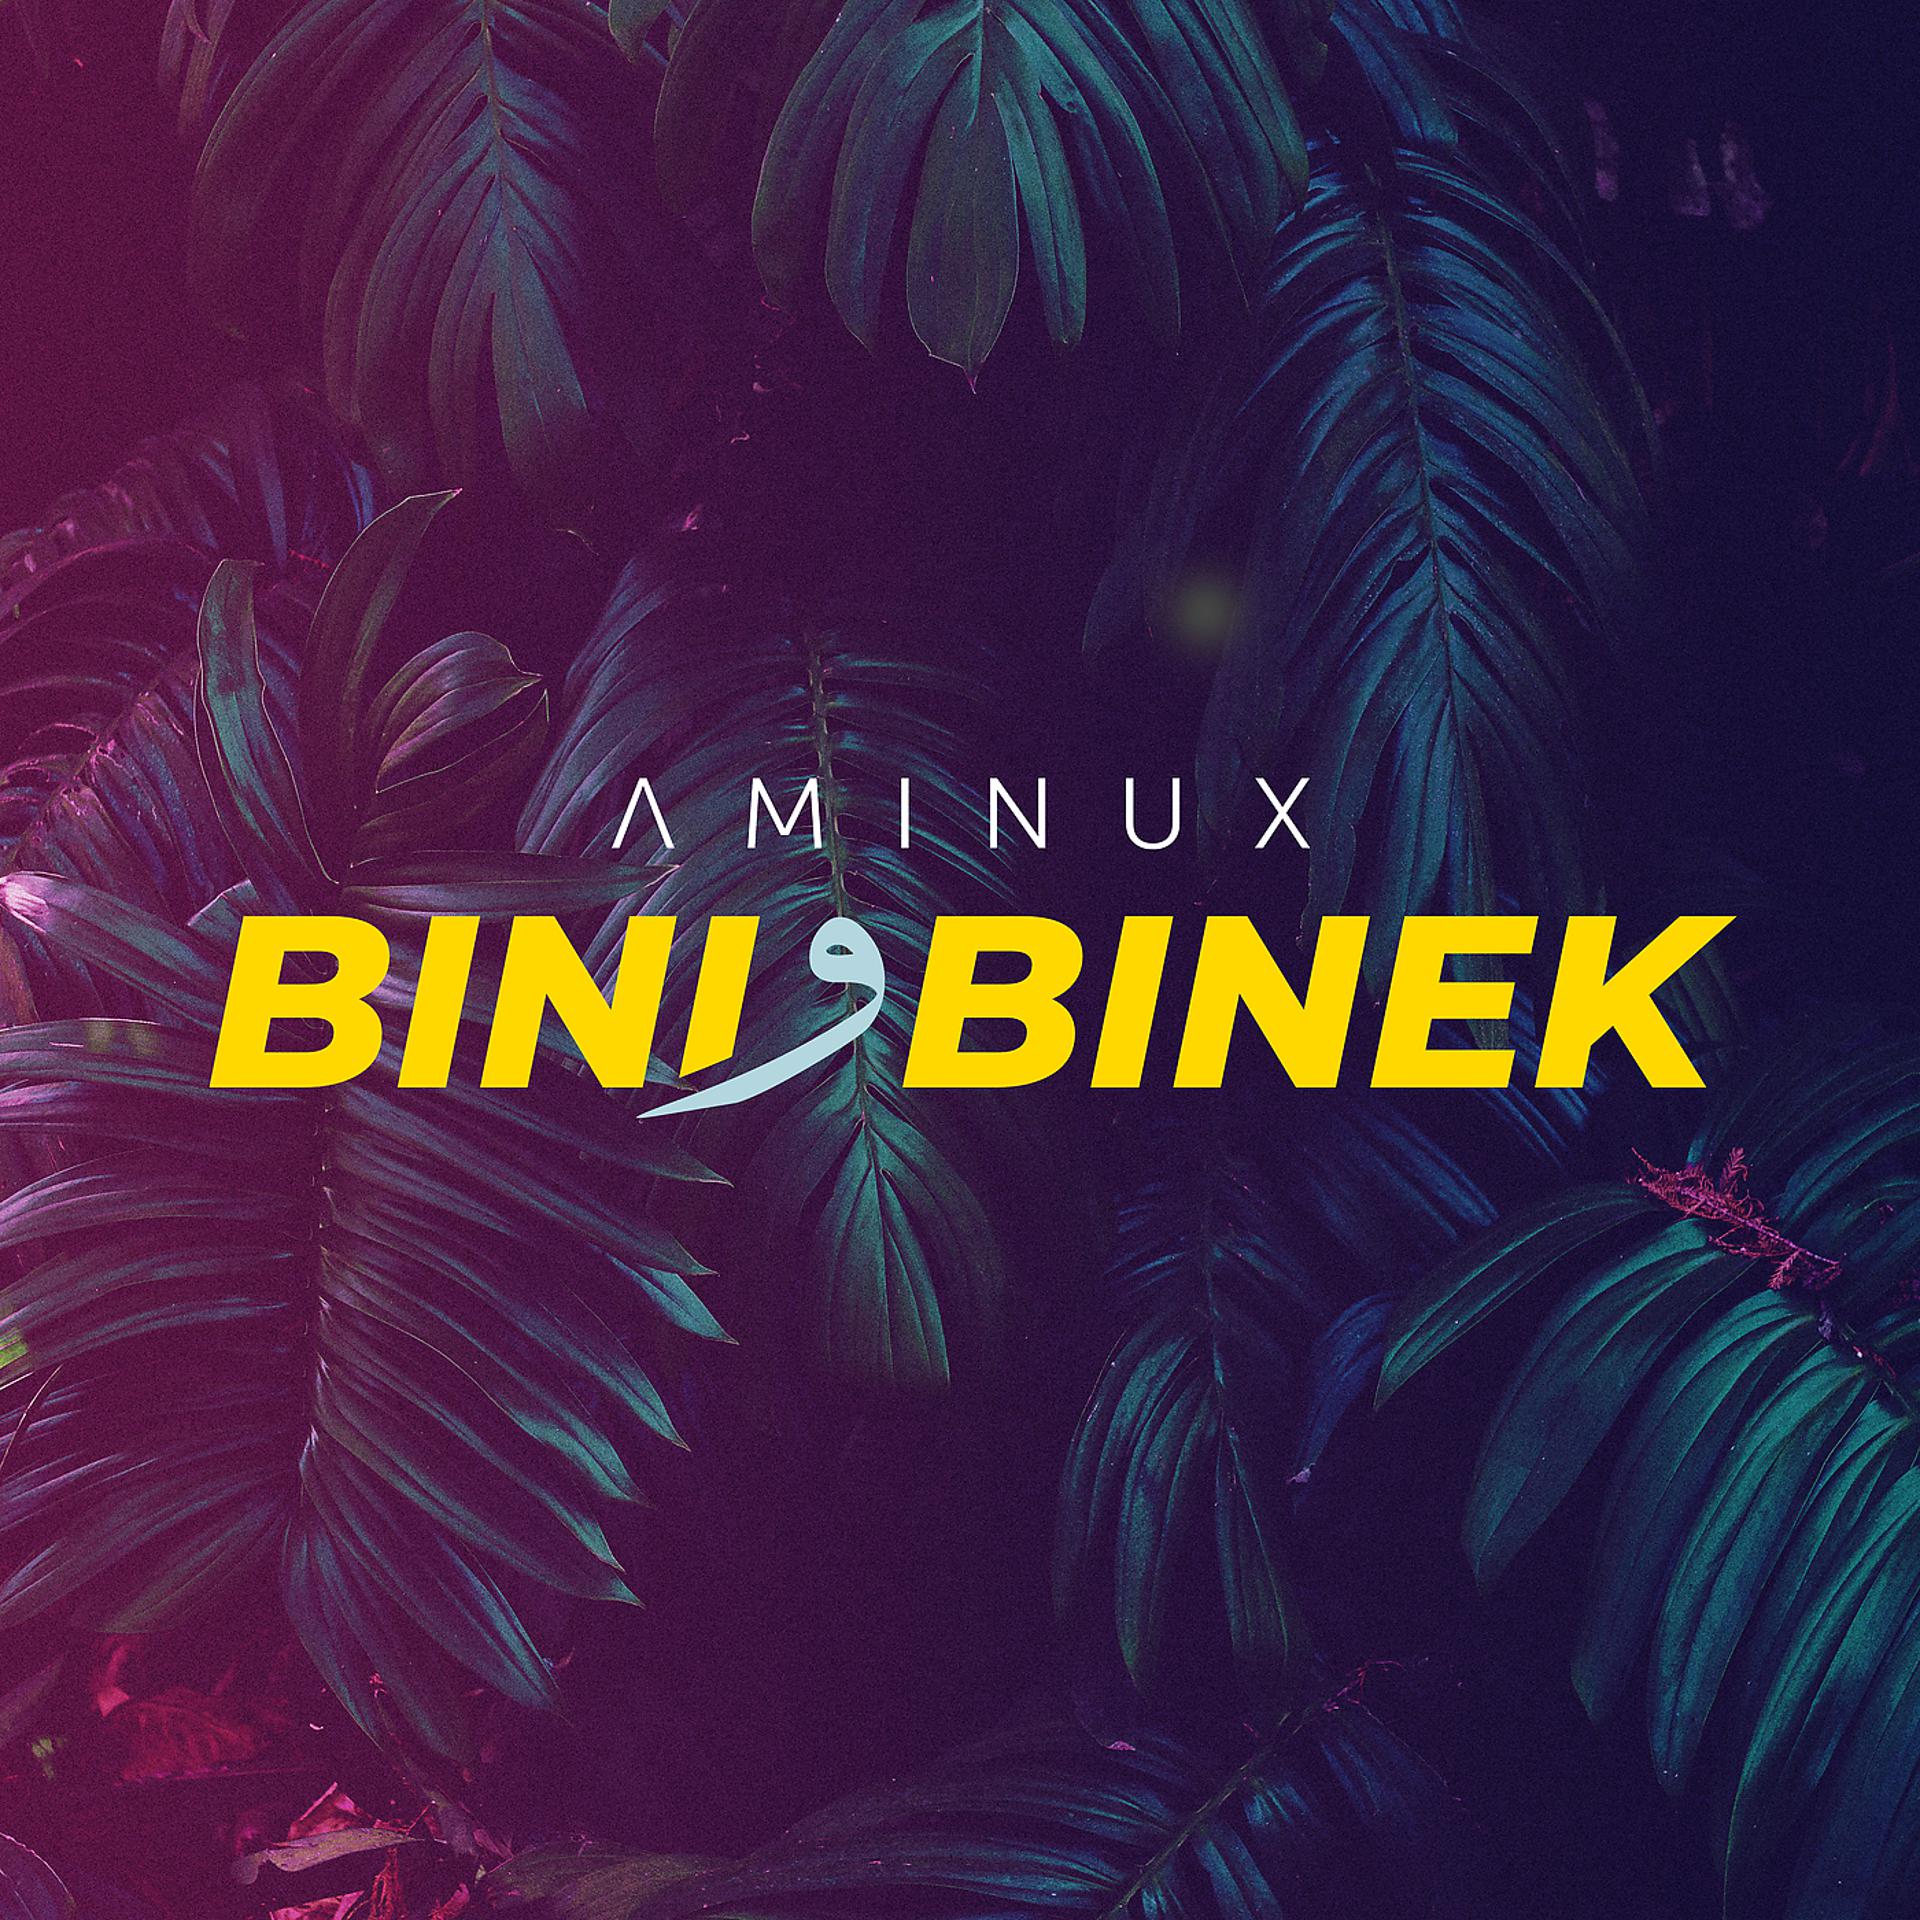 Постер к треку AMINUX - Bini W Binek